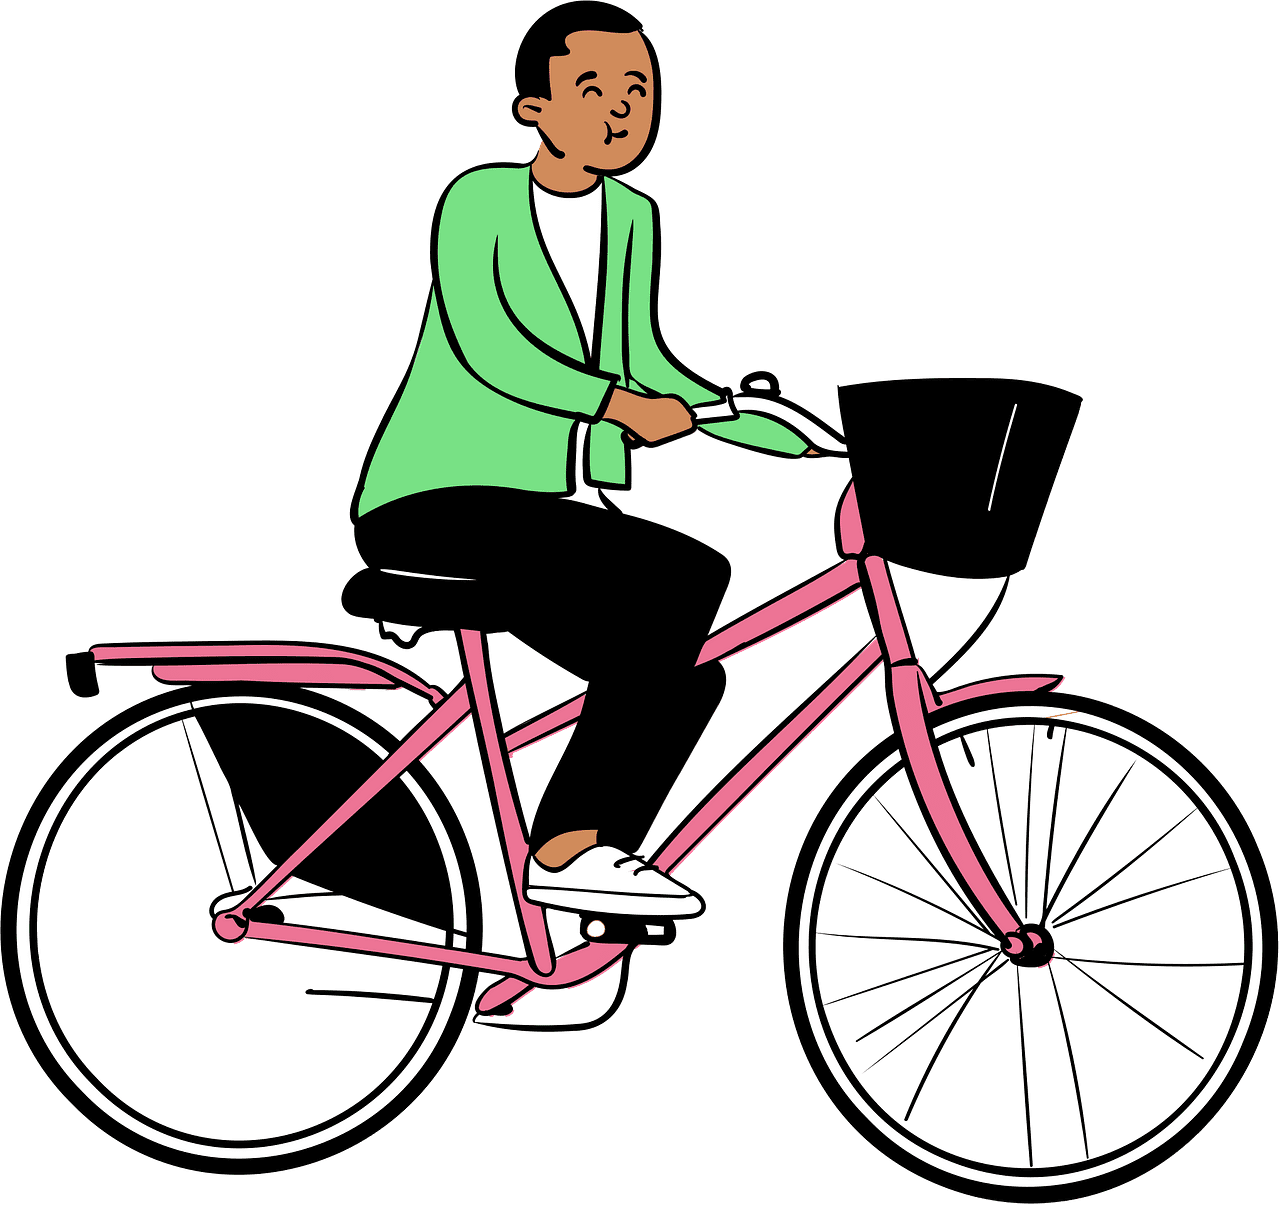 自転車に乗る男性 イラスト無料 イラスト